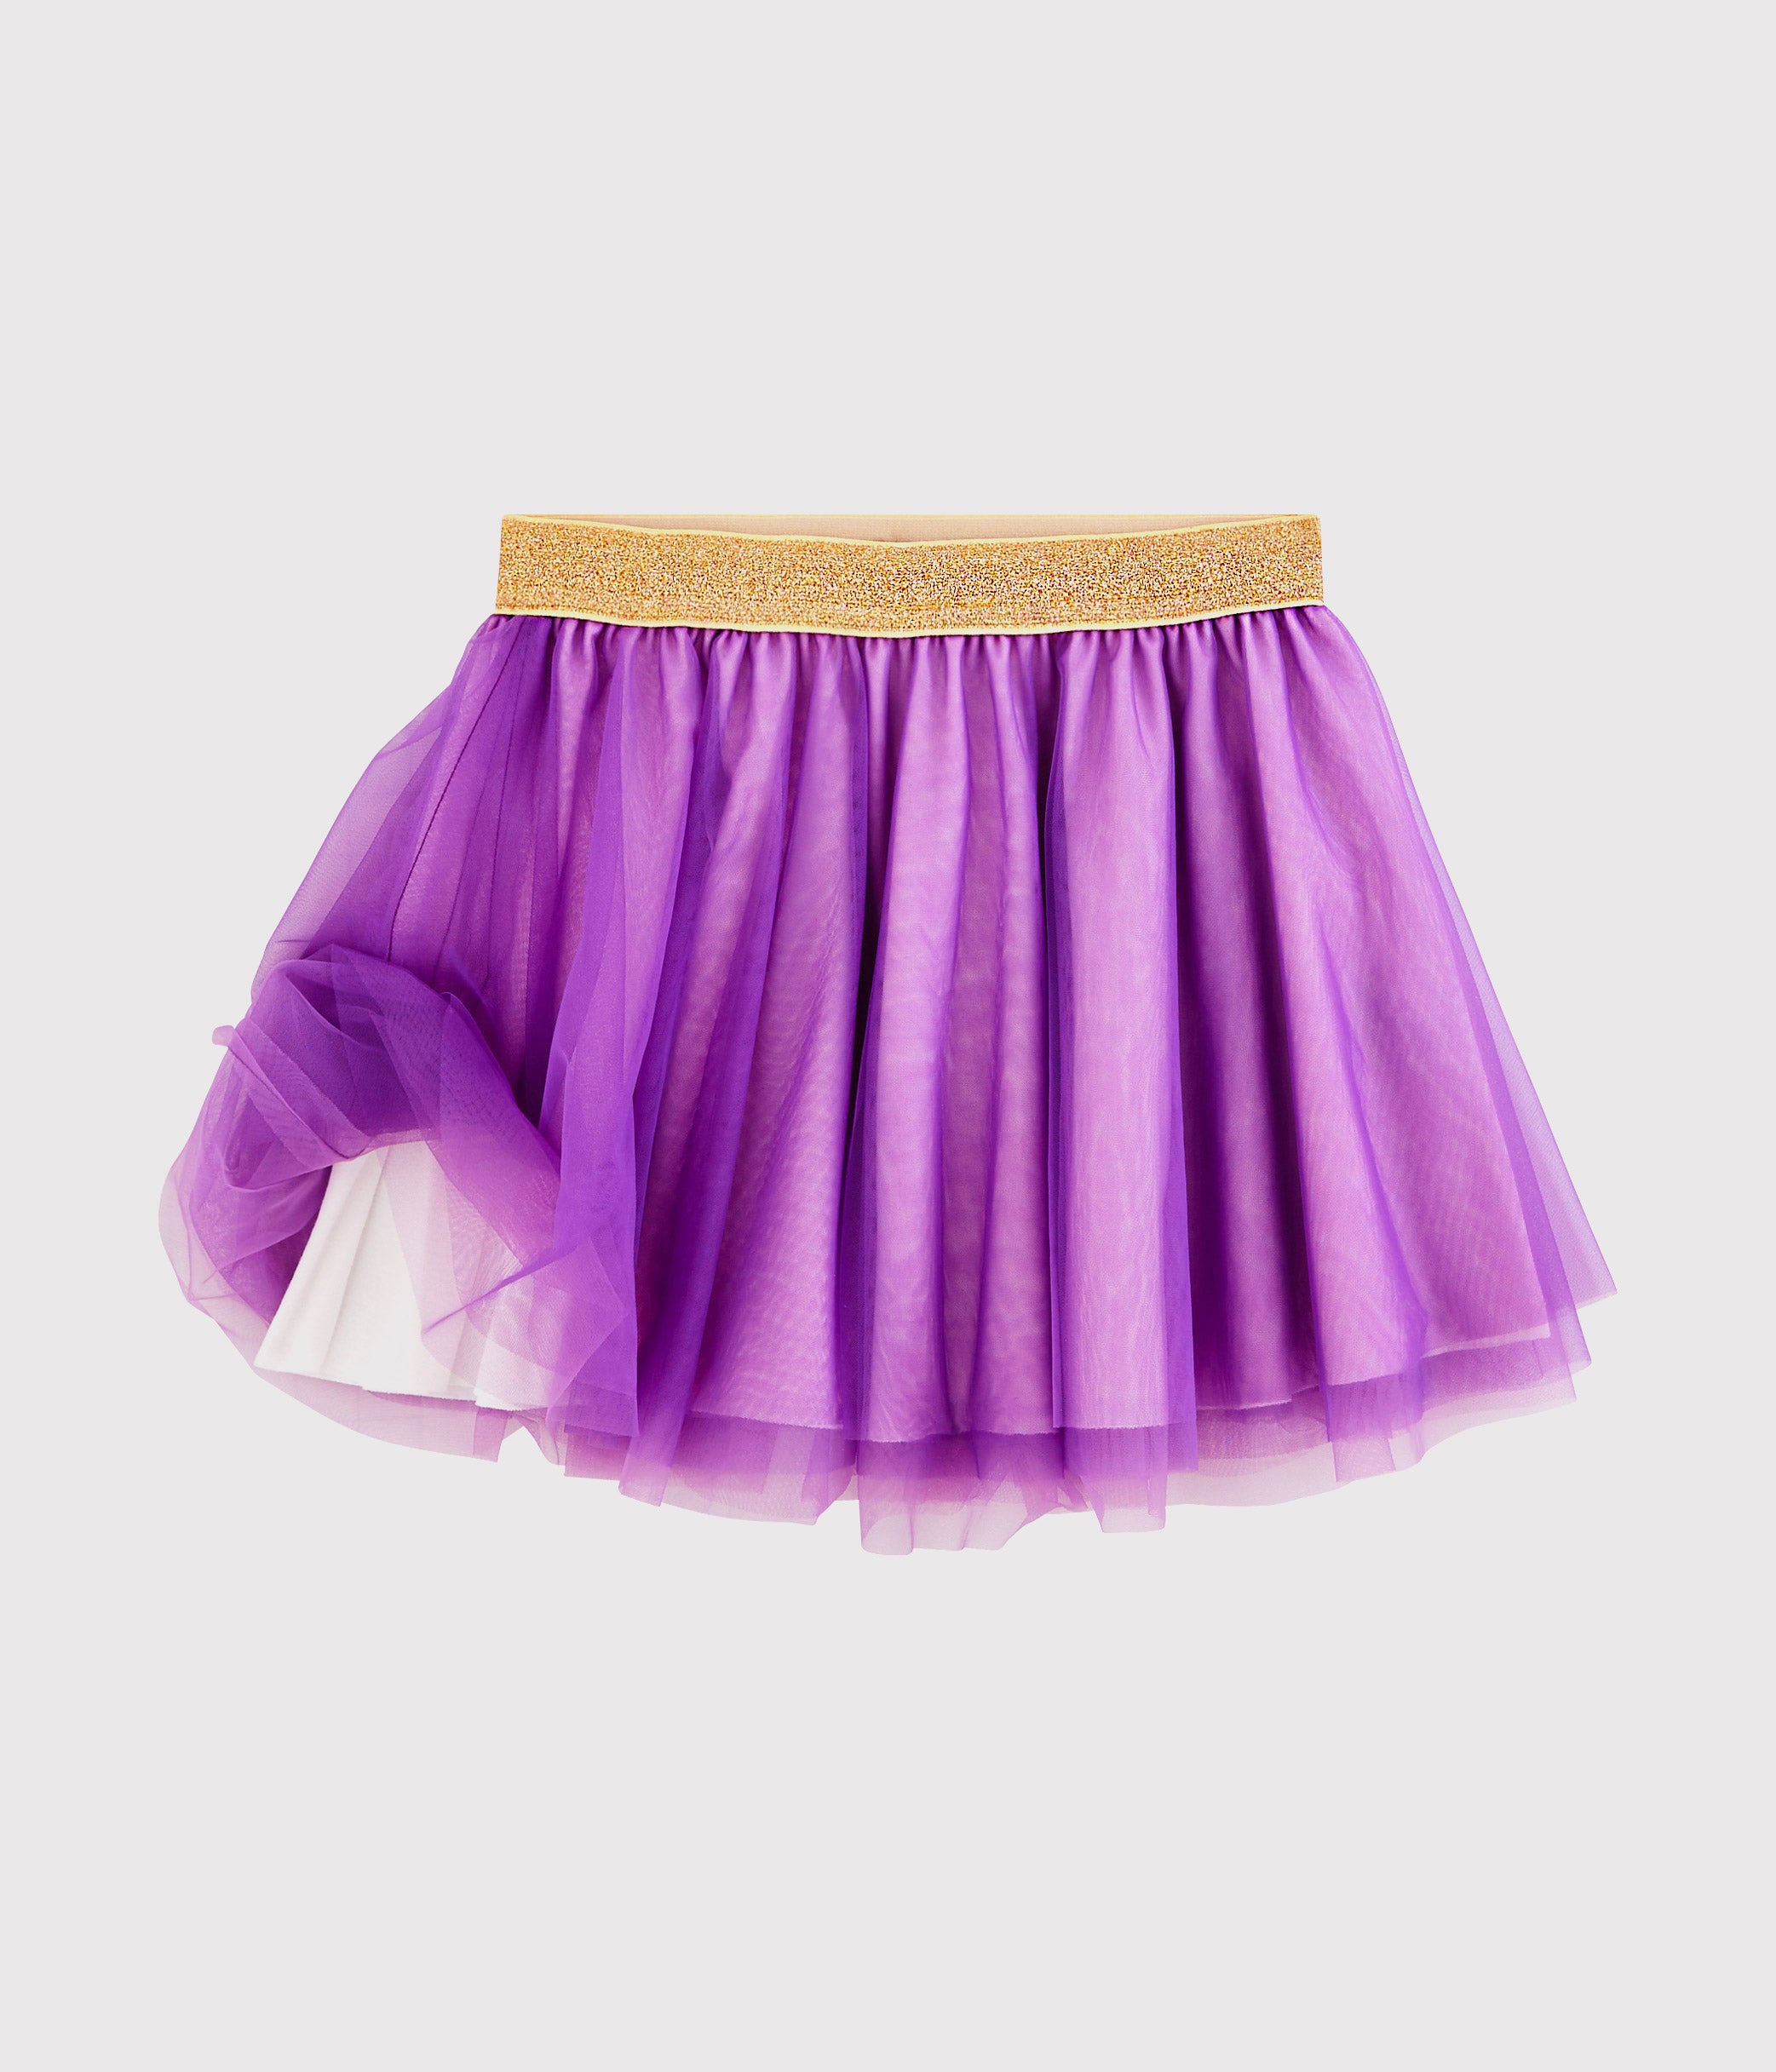 チュールスカート | ベビー服・子供服通販のPETTIT BATEAU【公式】